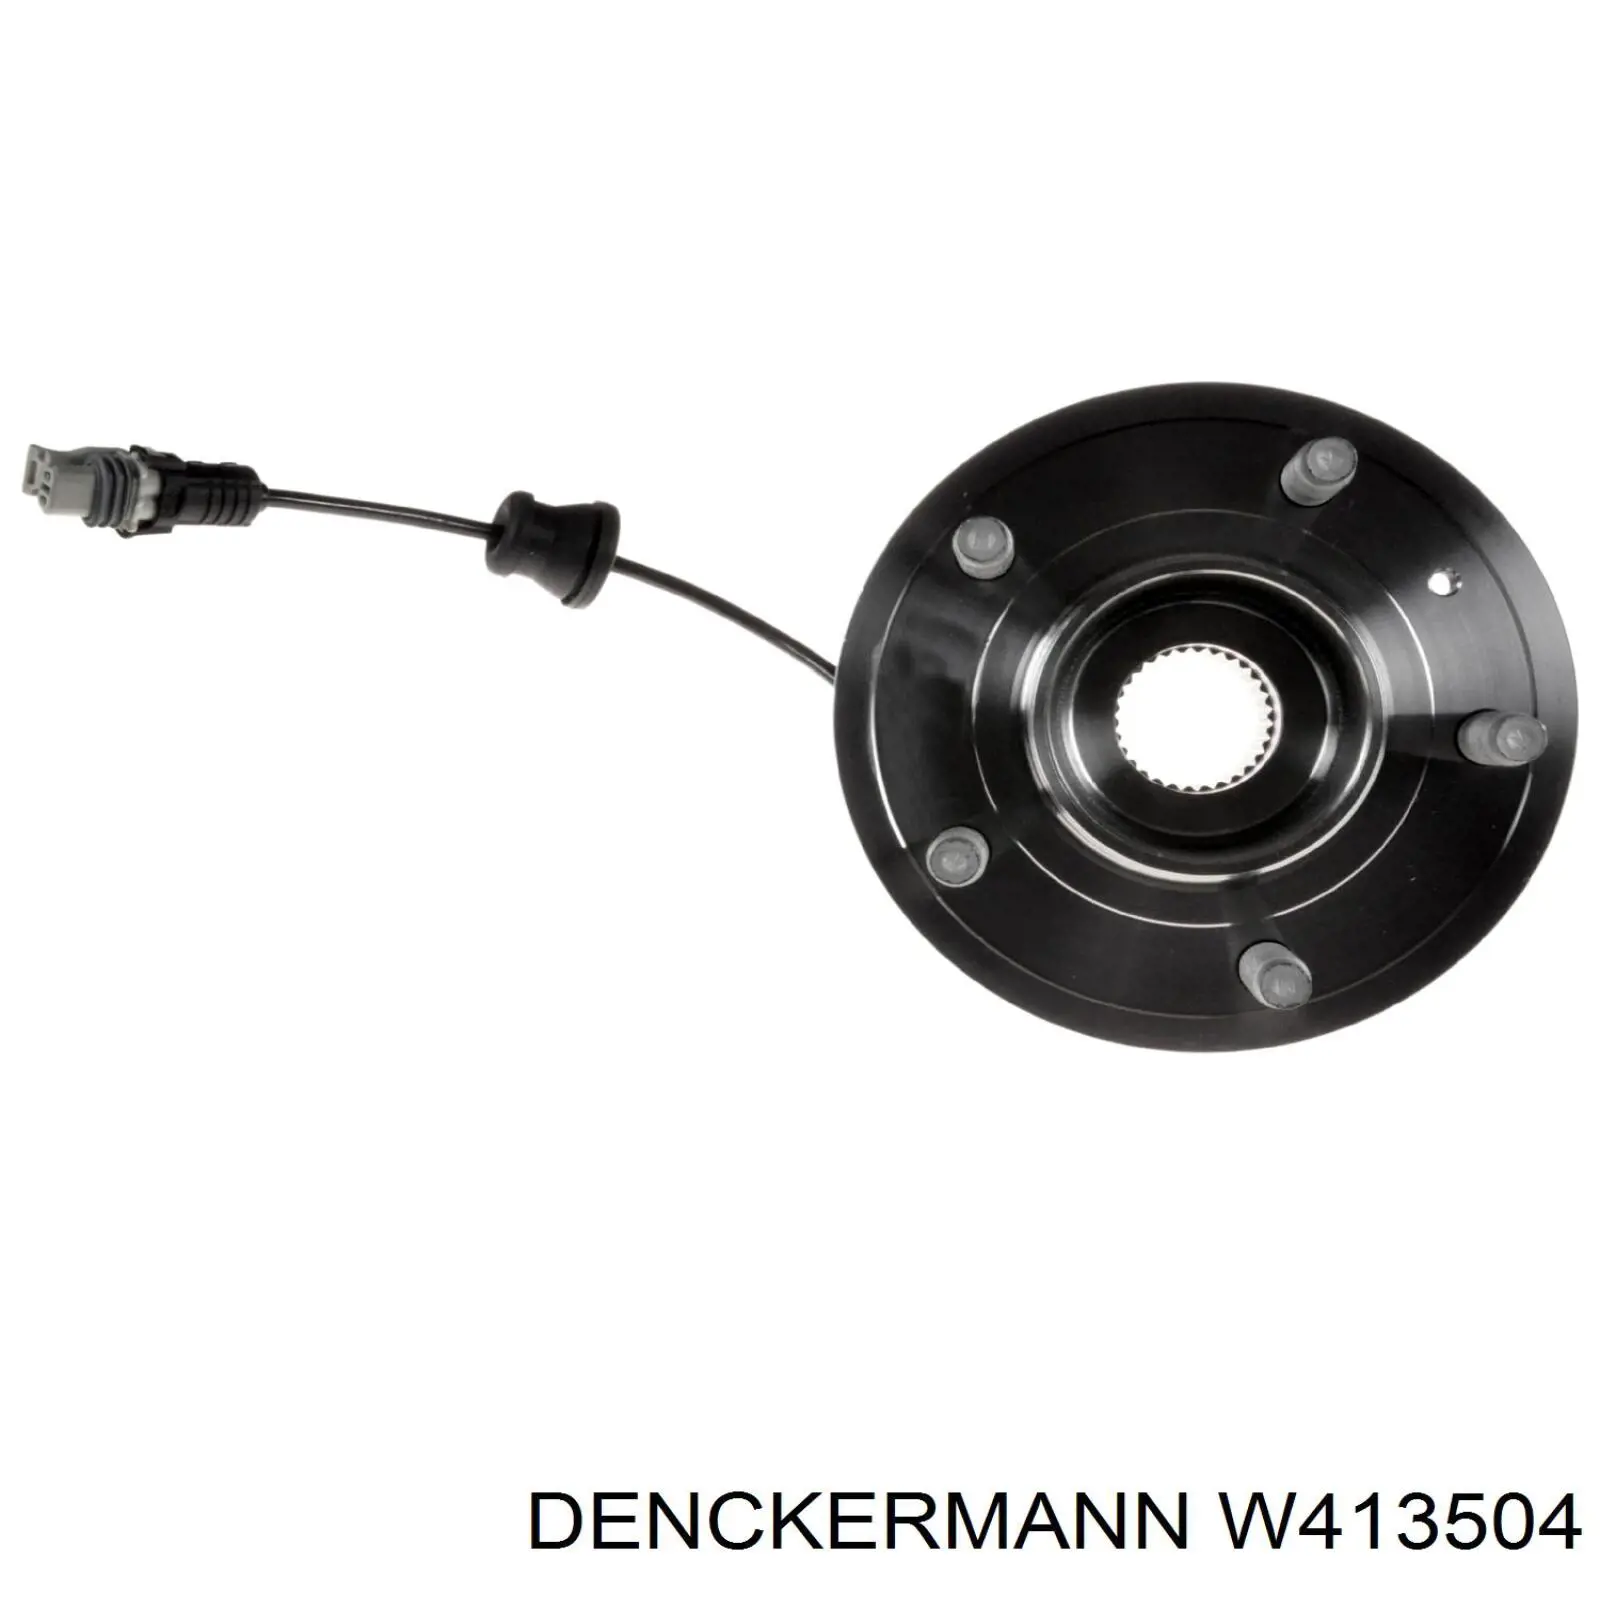 W413504 Denckermann cubo de rueda trasero